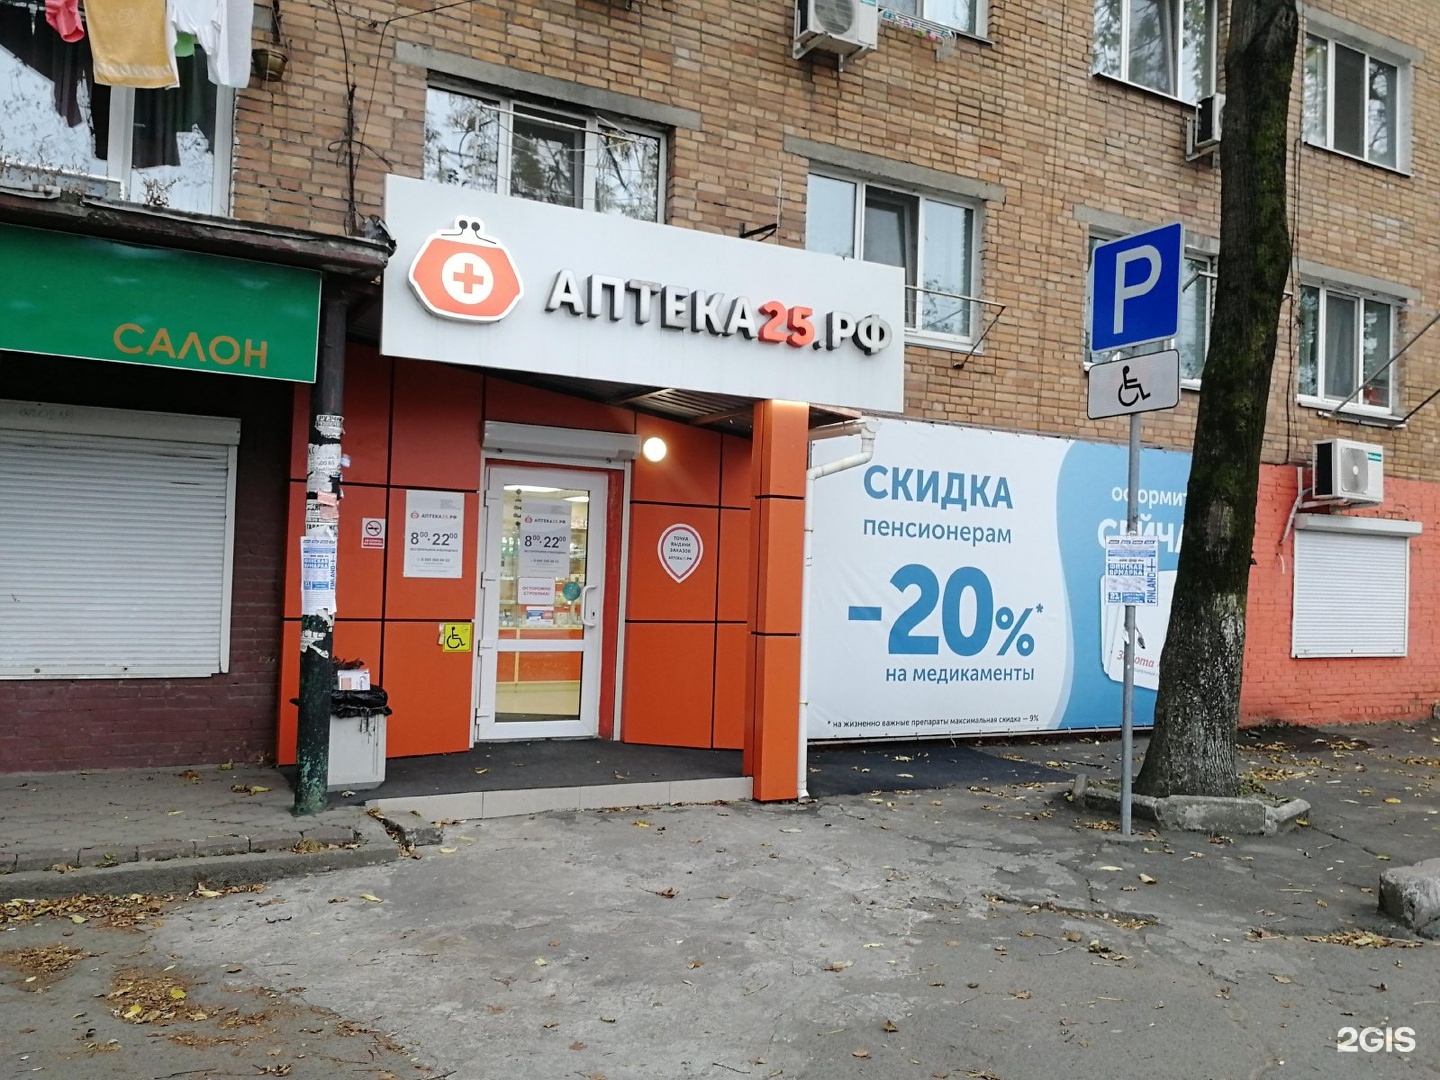 Аптека 25 В Городе Владивостоке